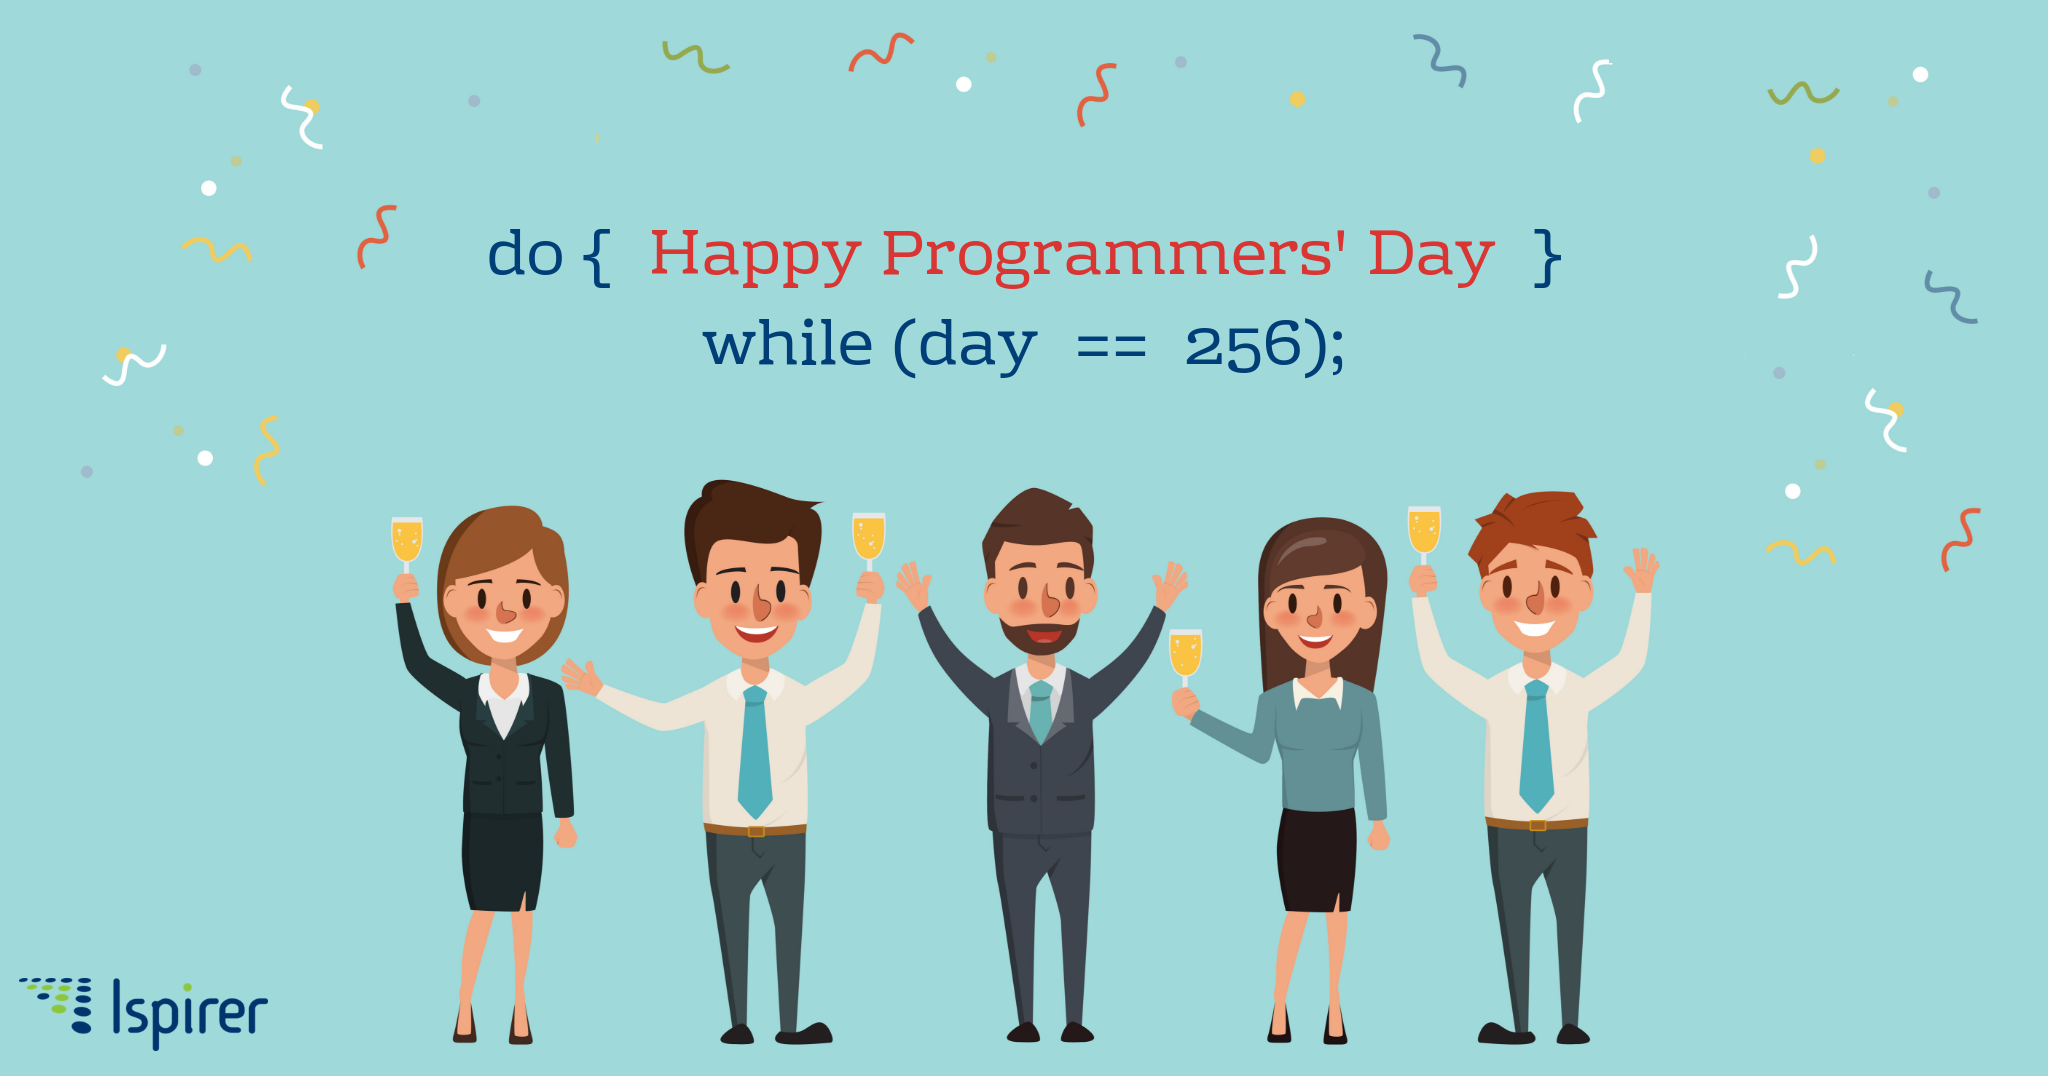 Happy Programmer's Day 2018